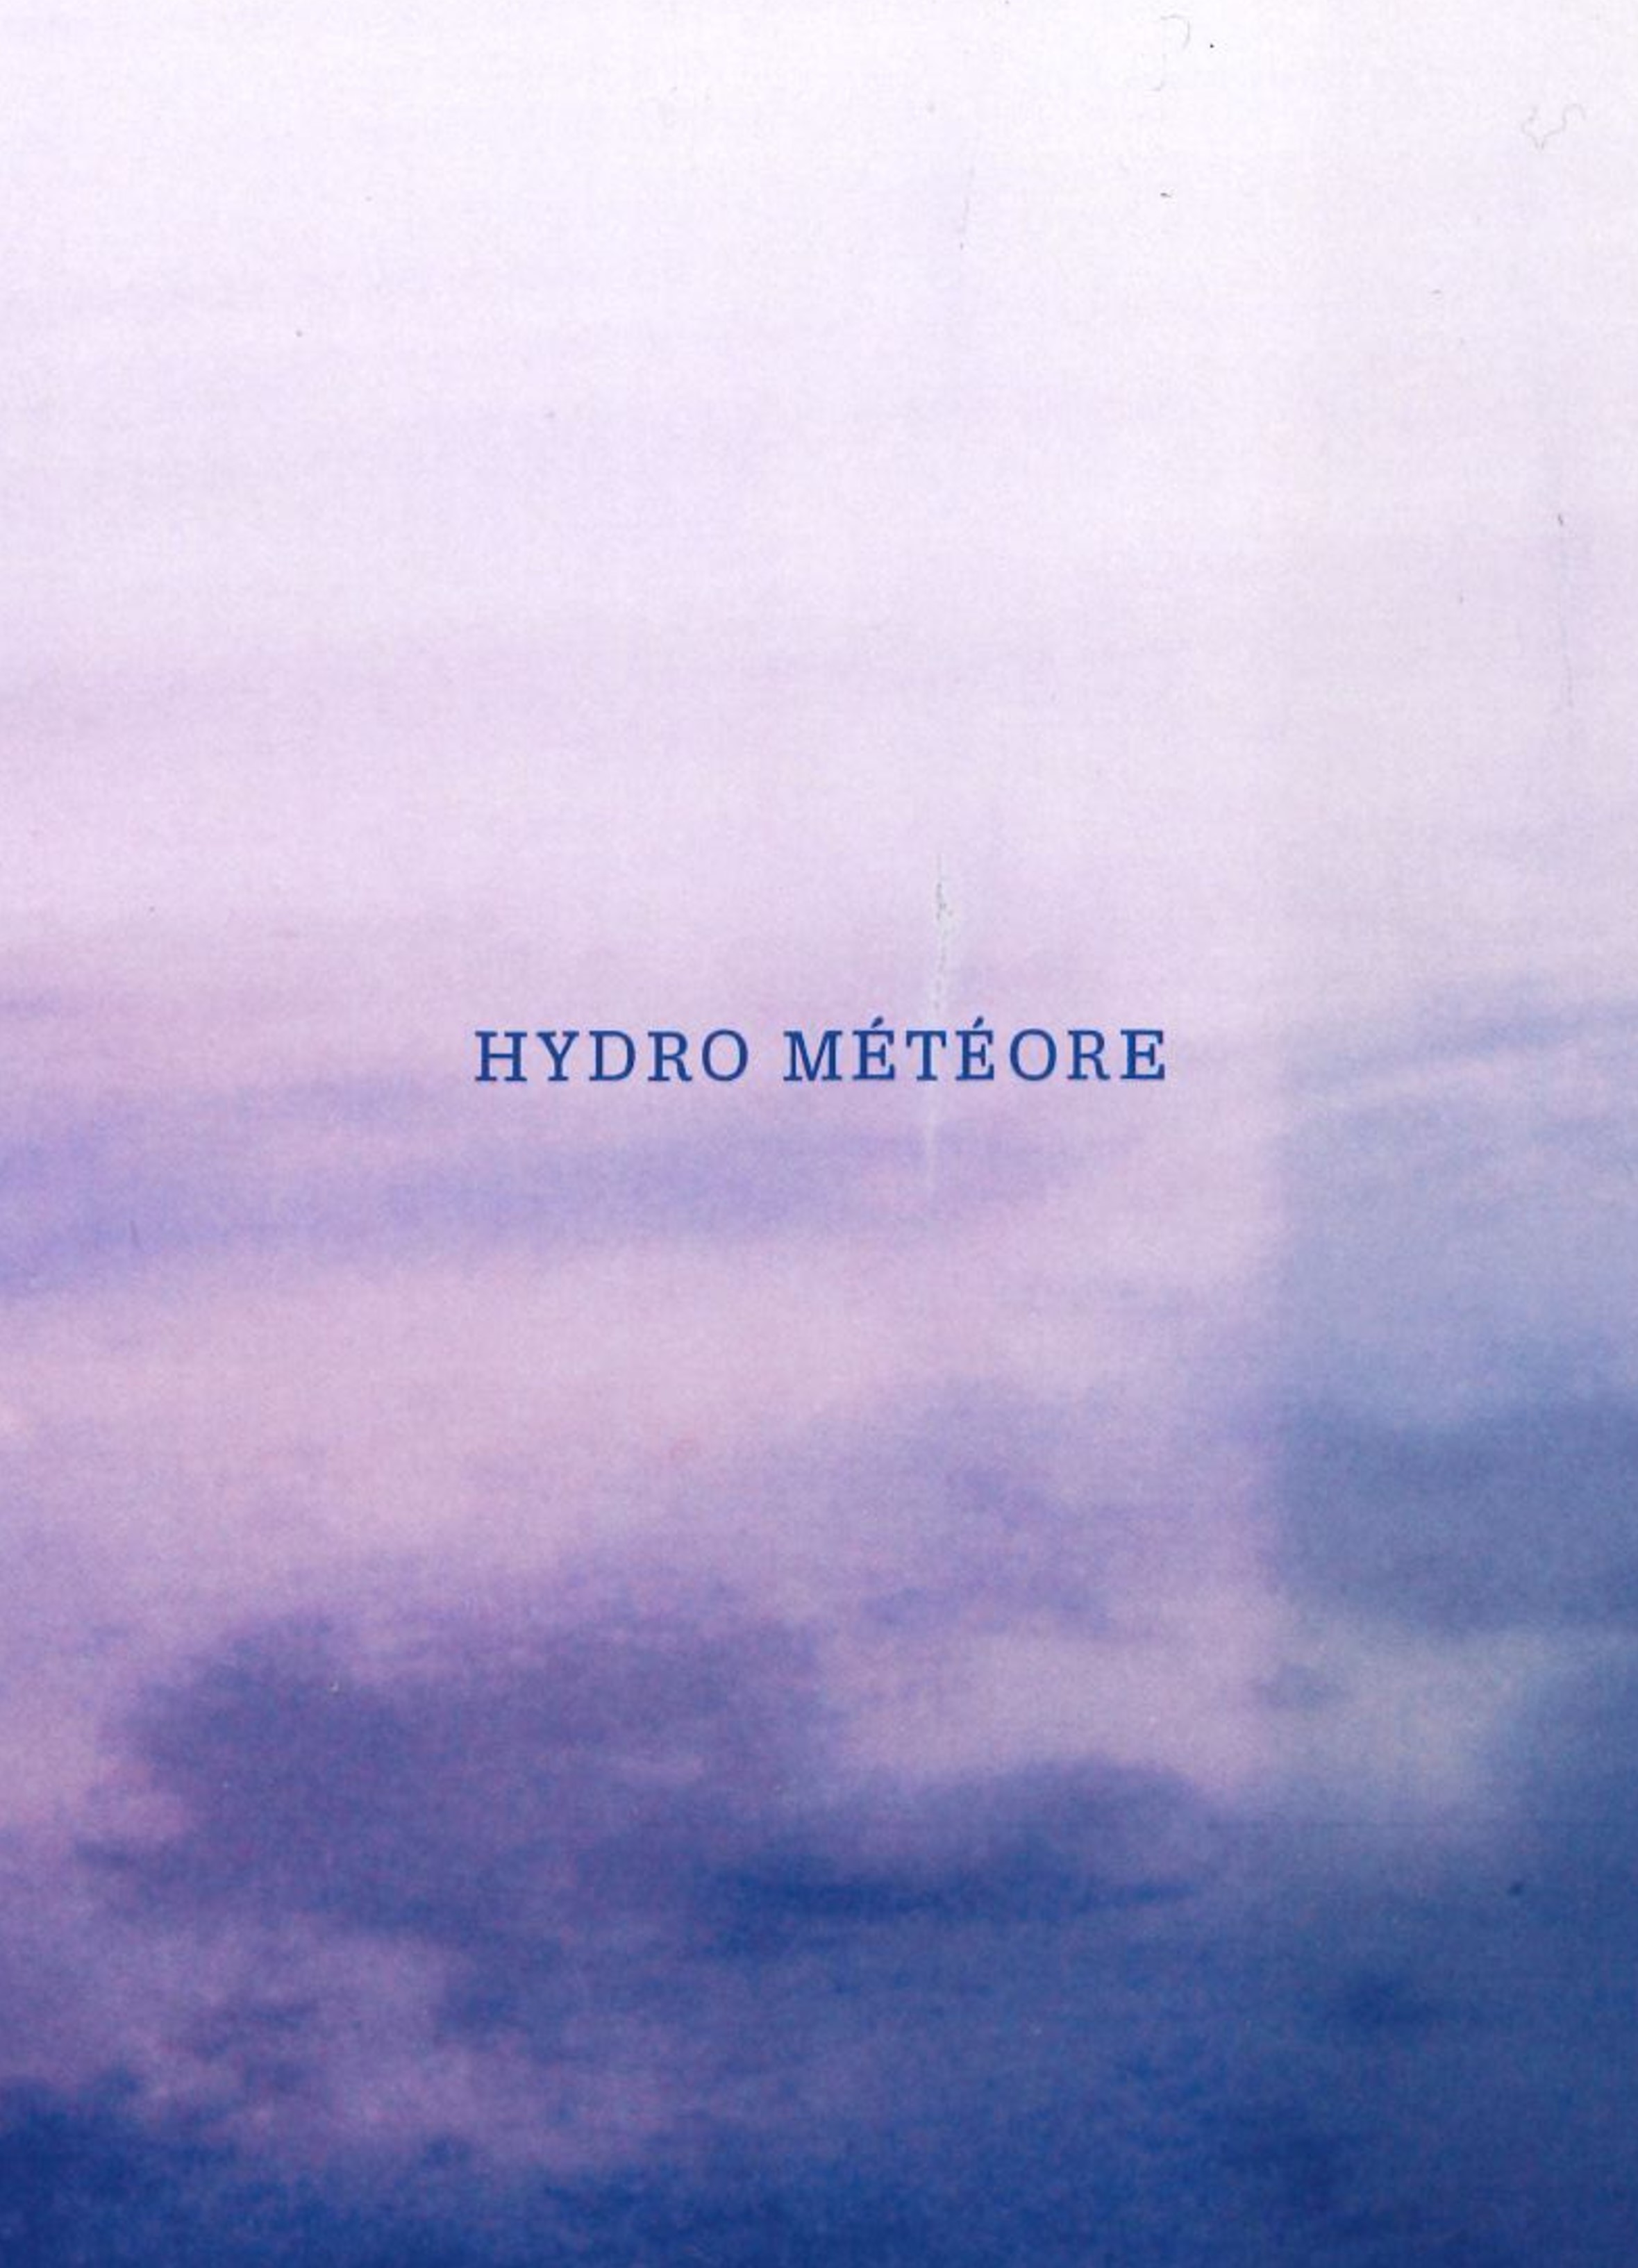 EXPO | "Hydro météore" de M.Ouazzani & N.Carrier